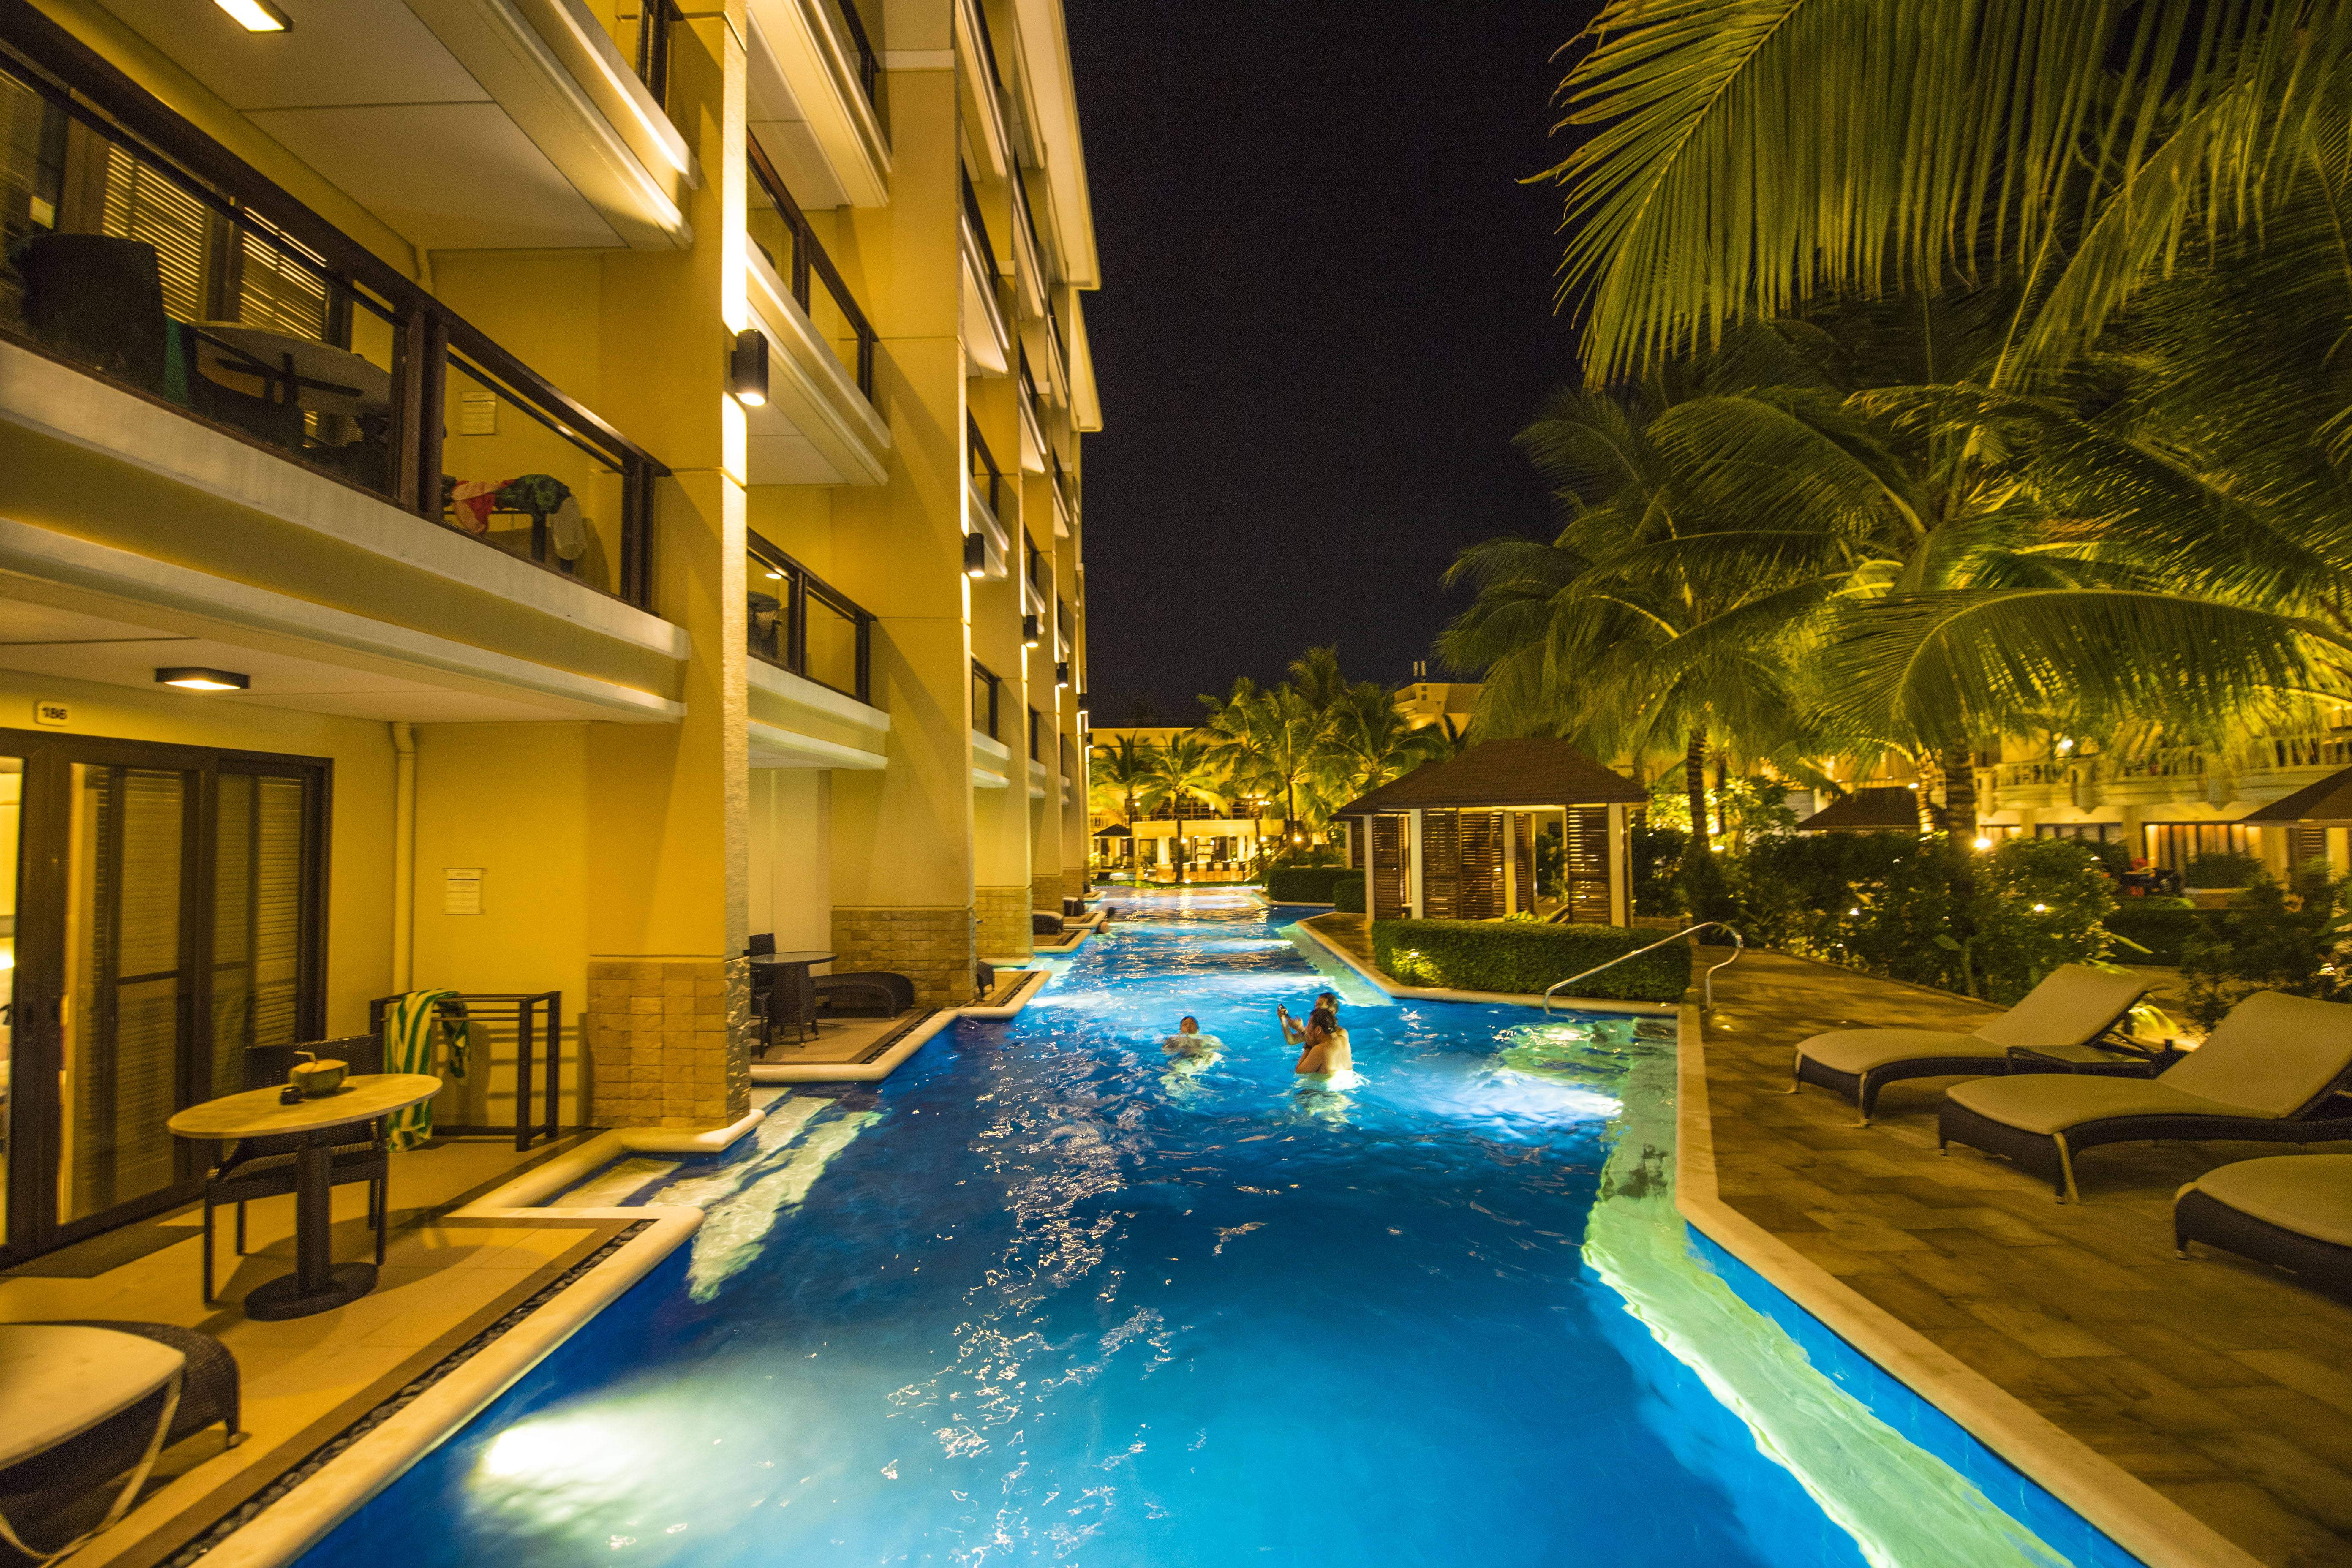 菲律宾旅行最佳住宿地,建在沙滩上的五星连锁酒店